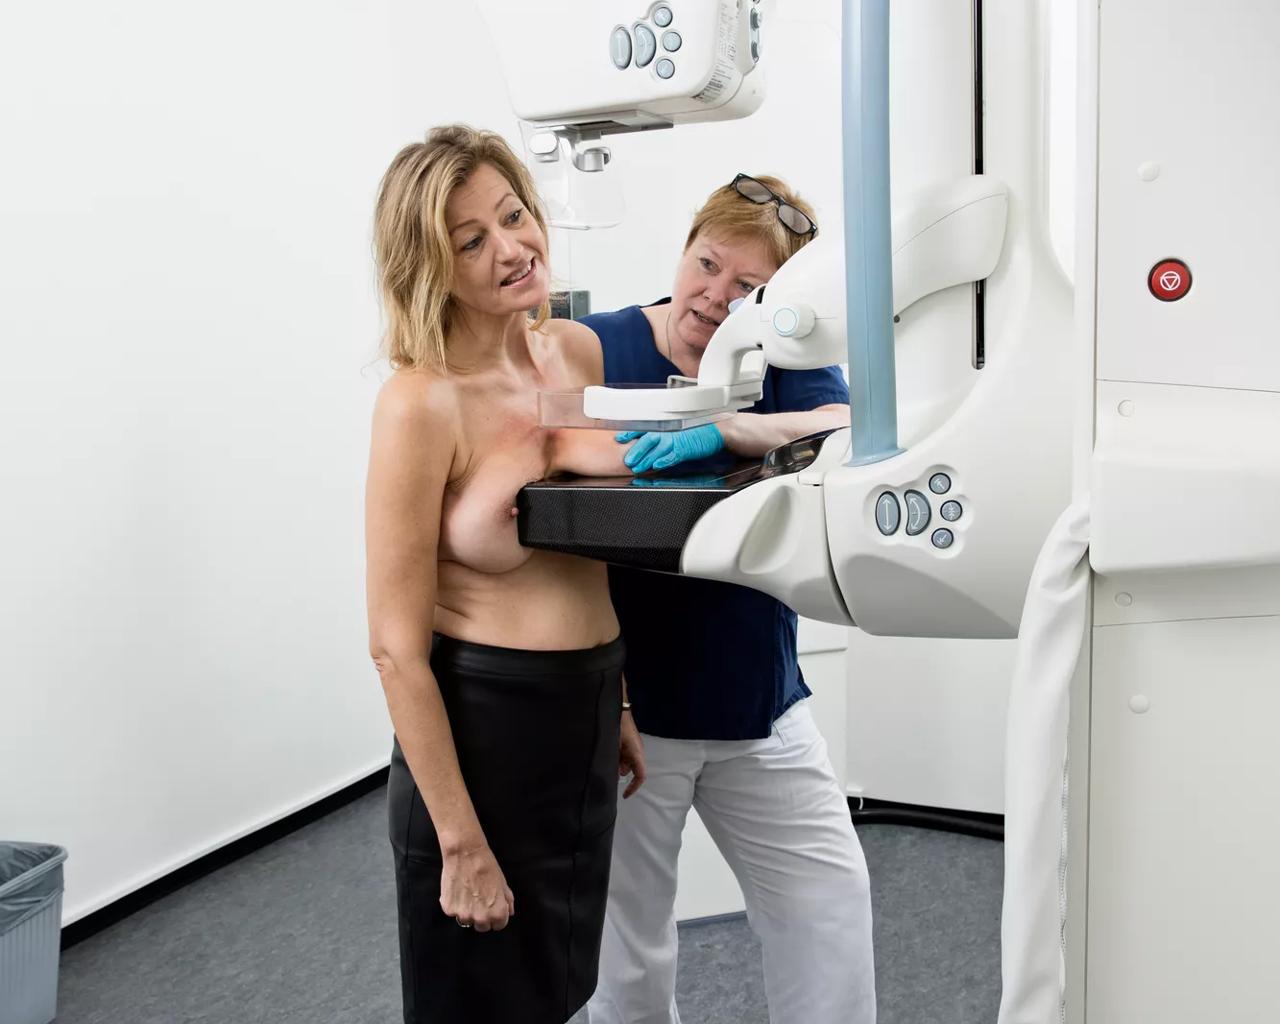 Billedet viser en kvinde, der får foretaget en mammografi